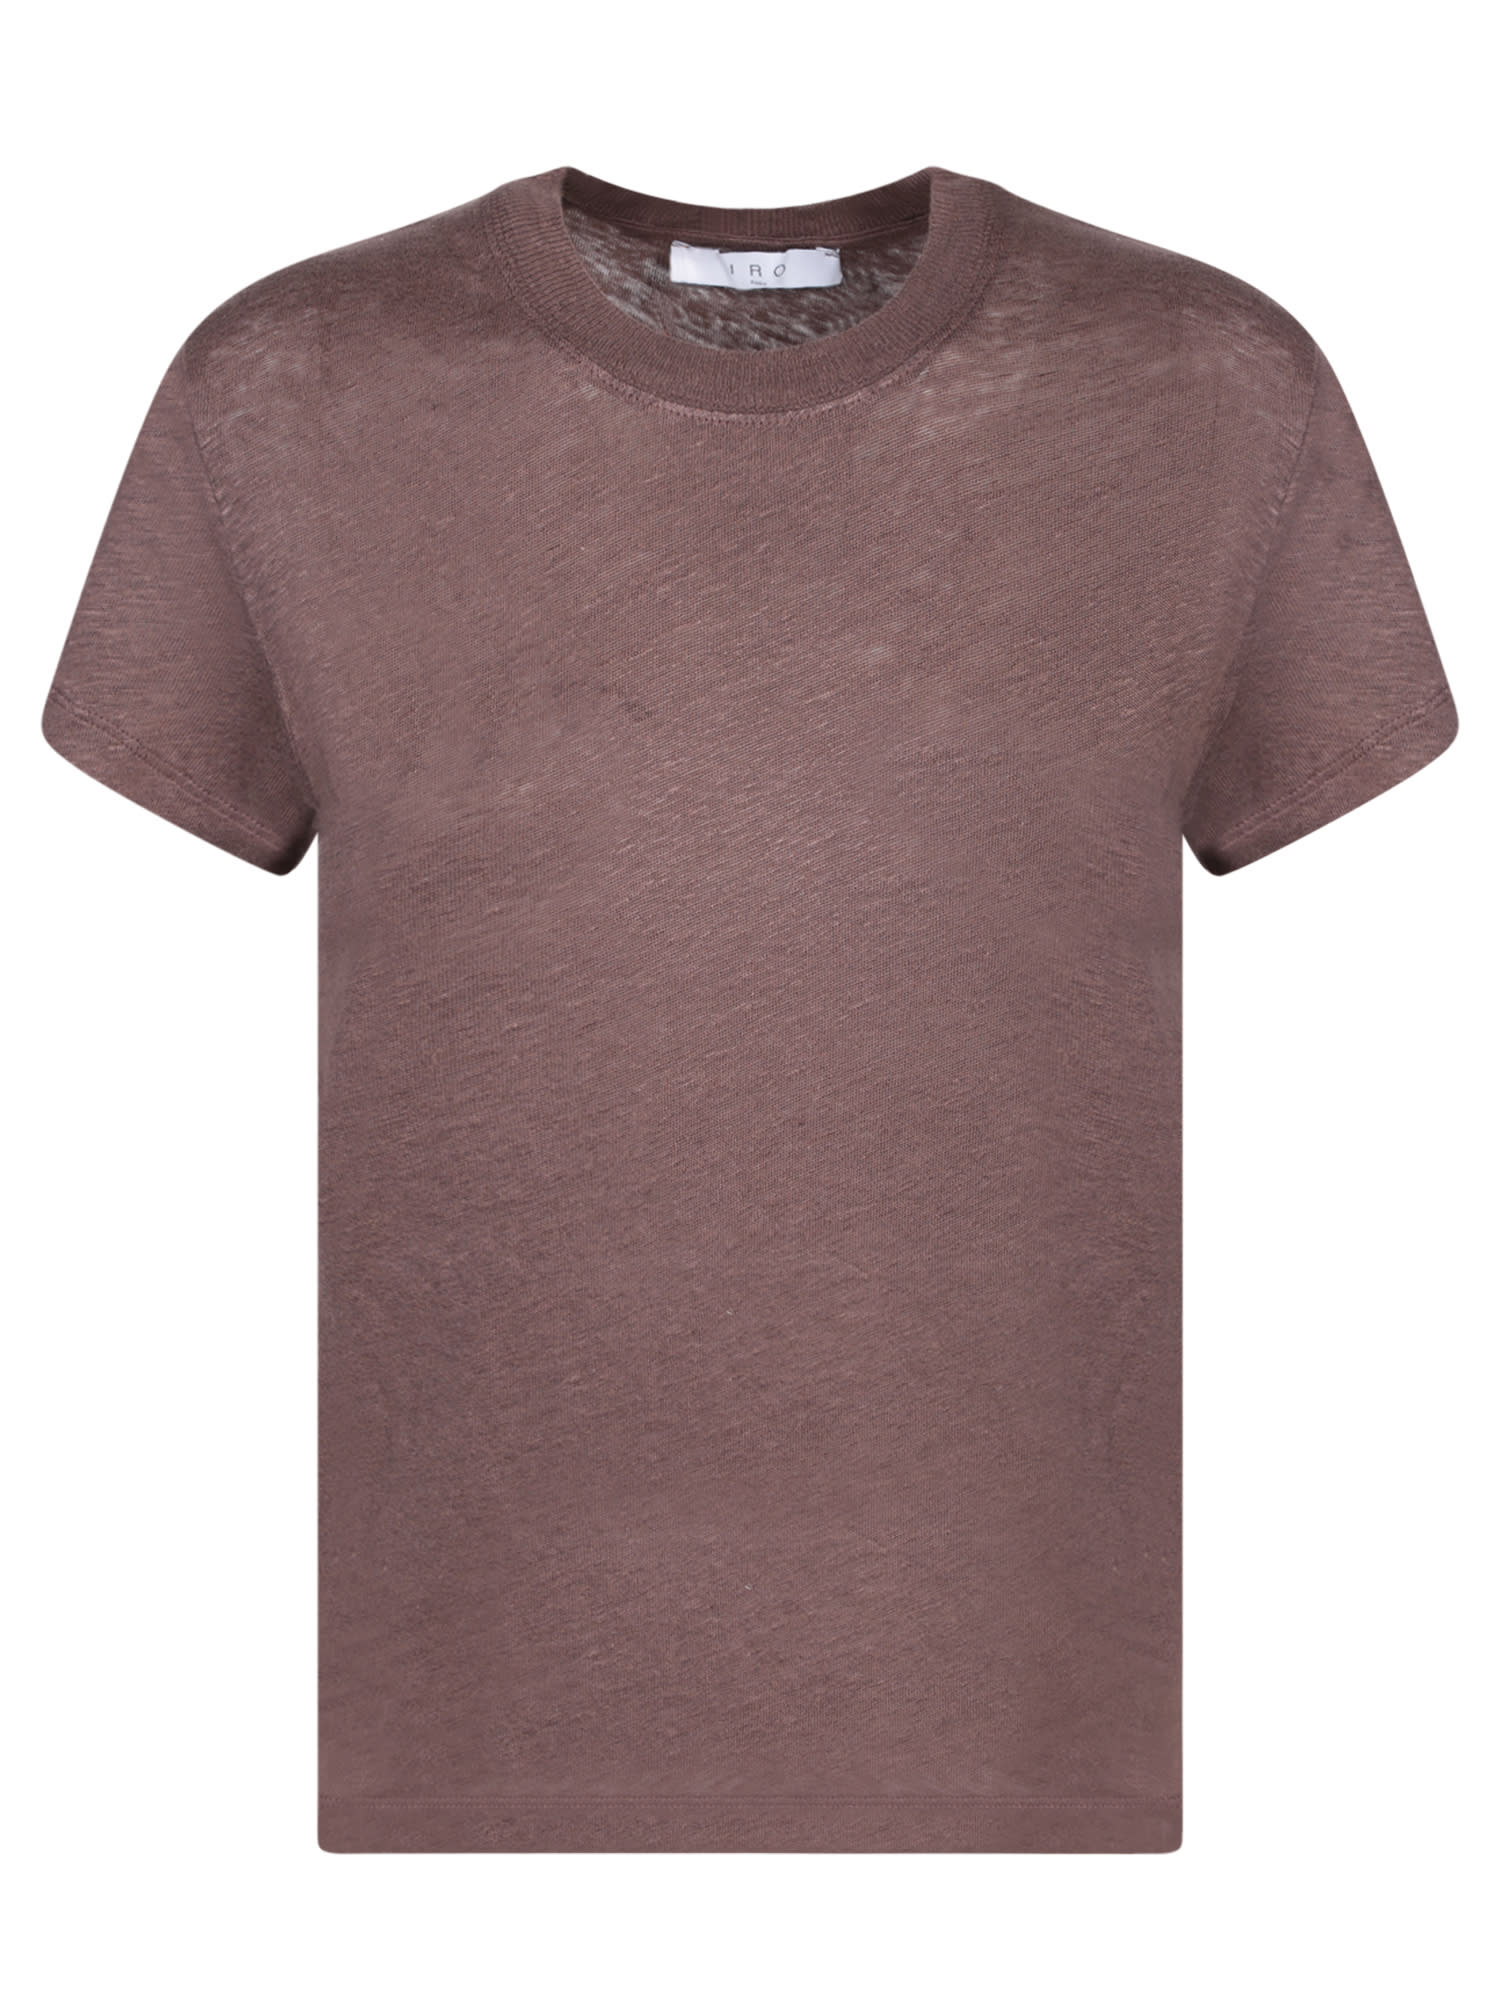 Brown Linen T-shirt